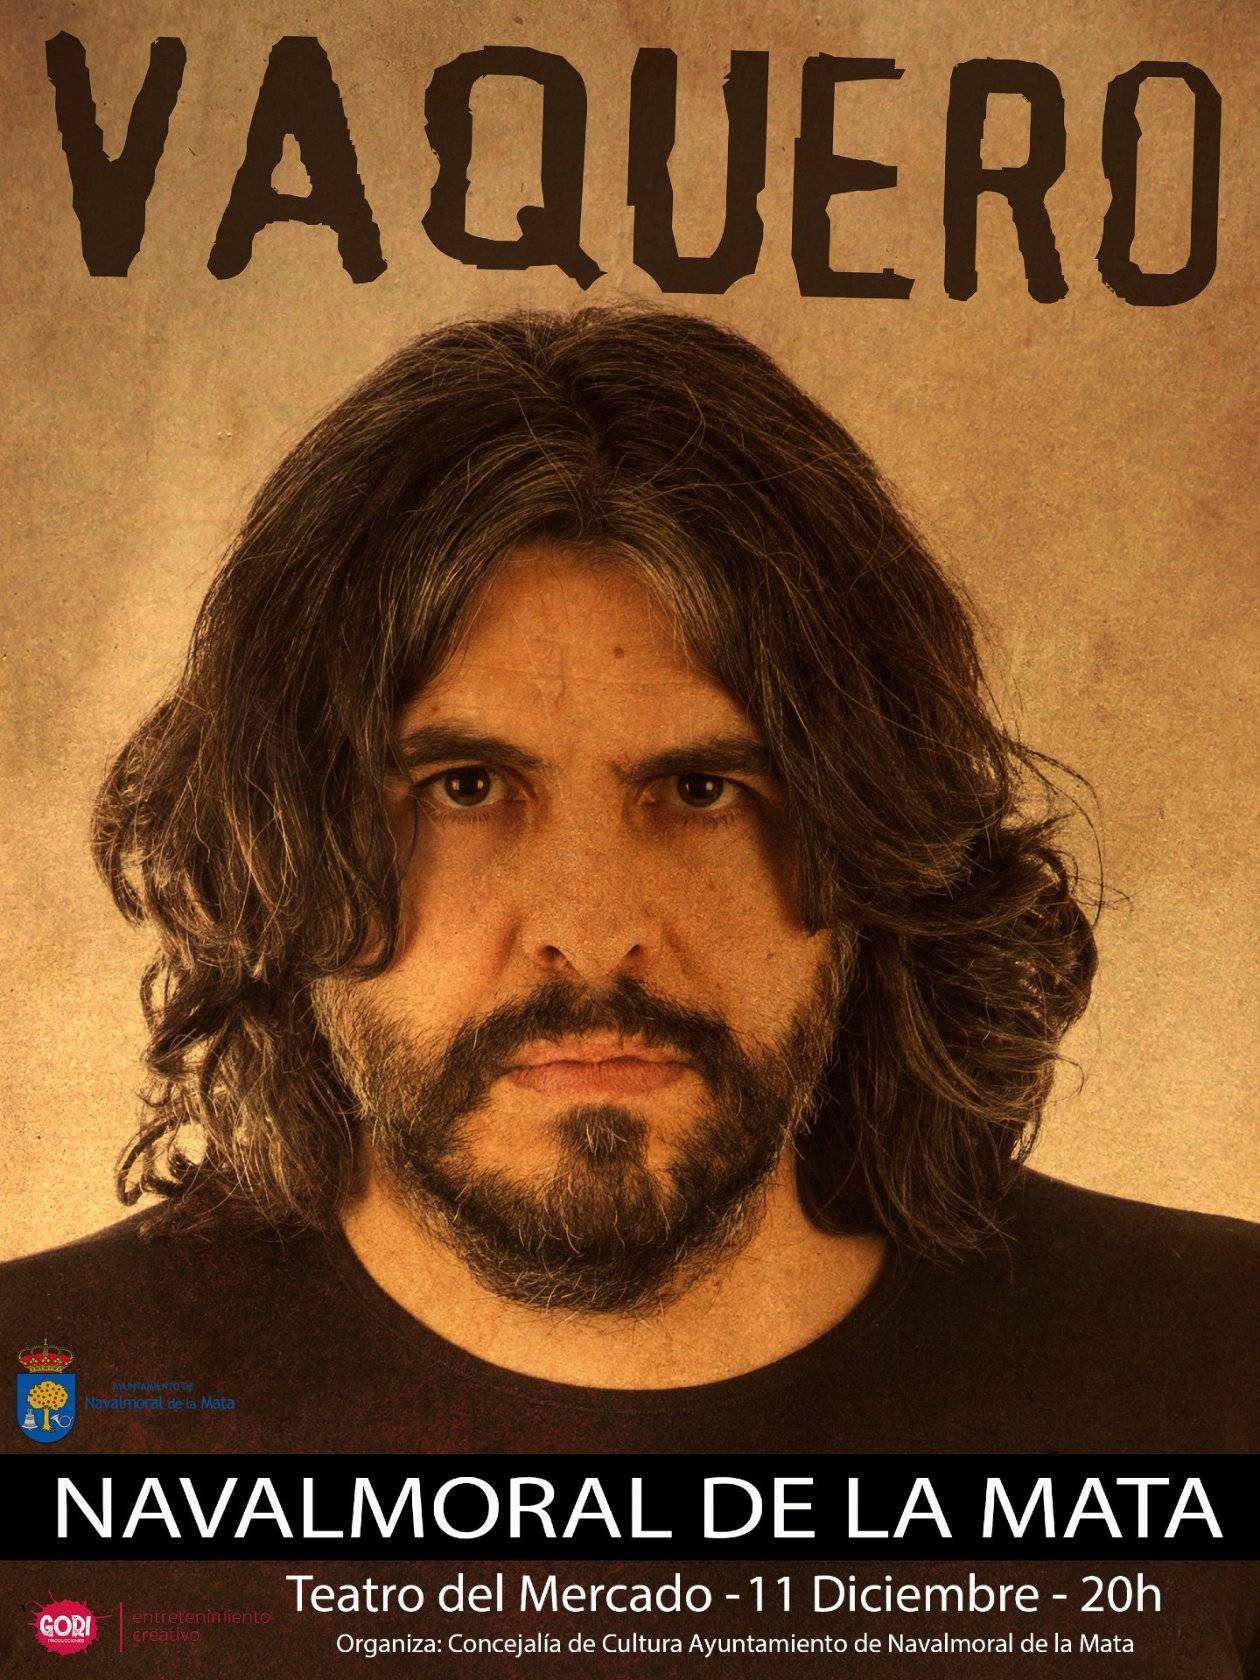 Vaquero (2021) - Navalmoral de la Mata (Cáceres)